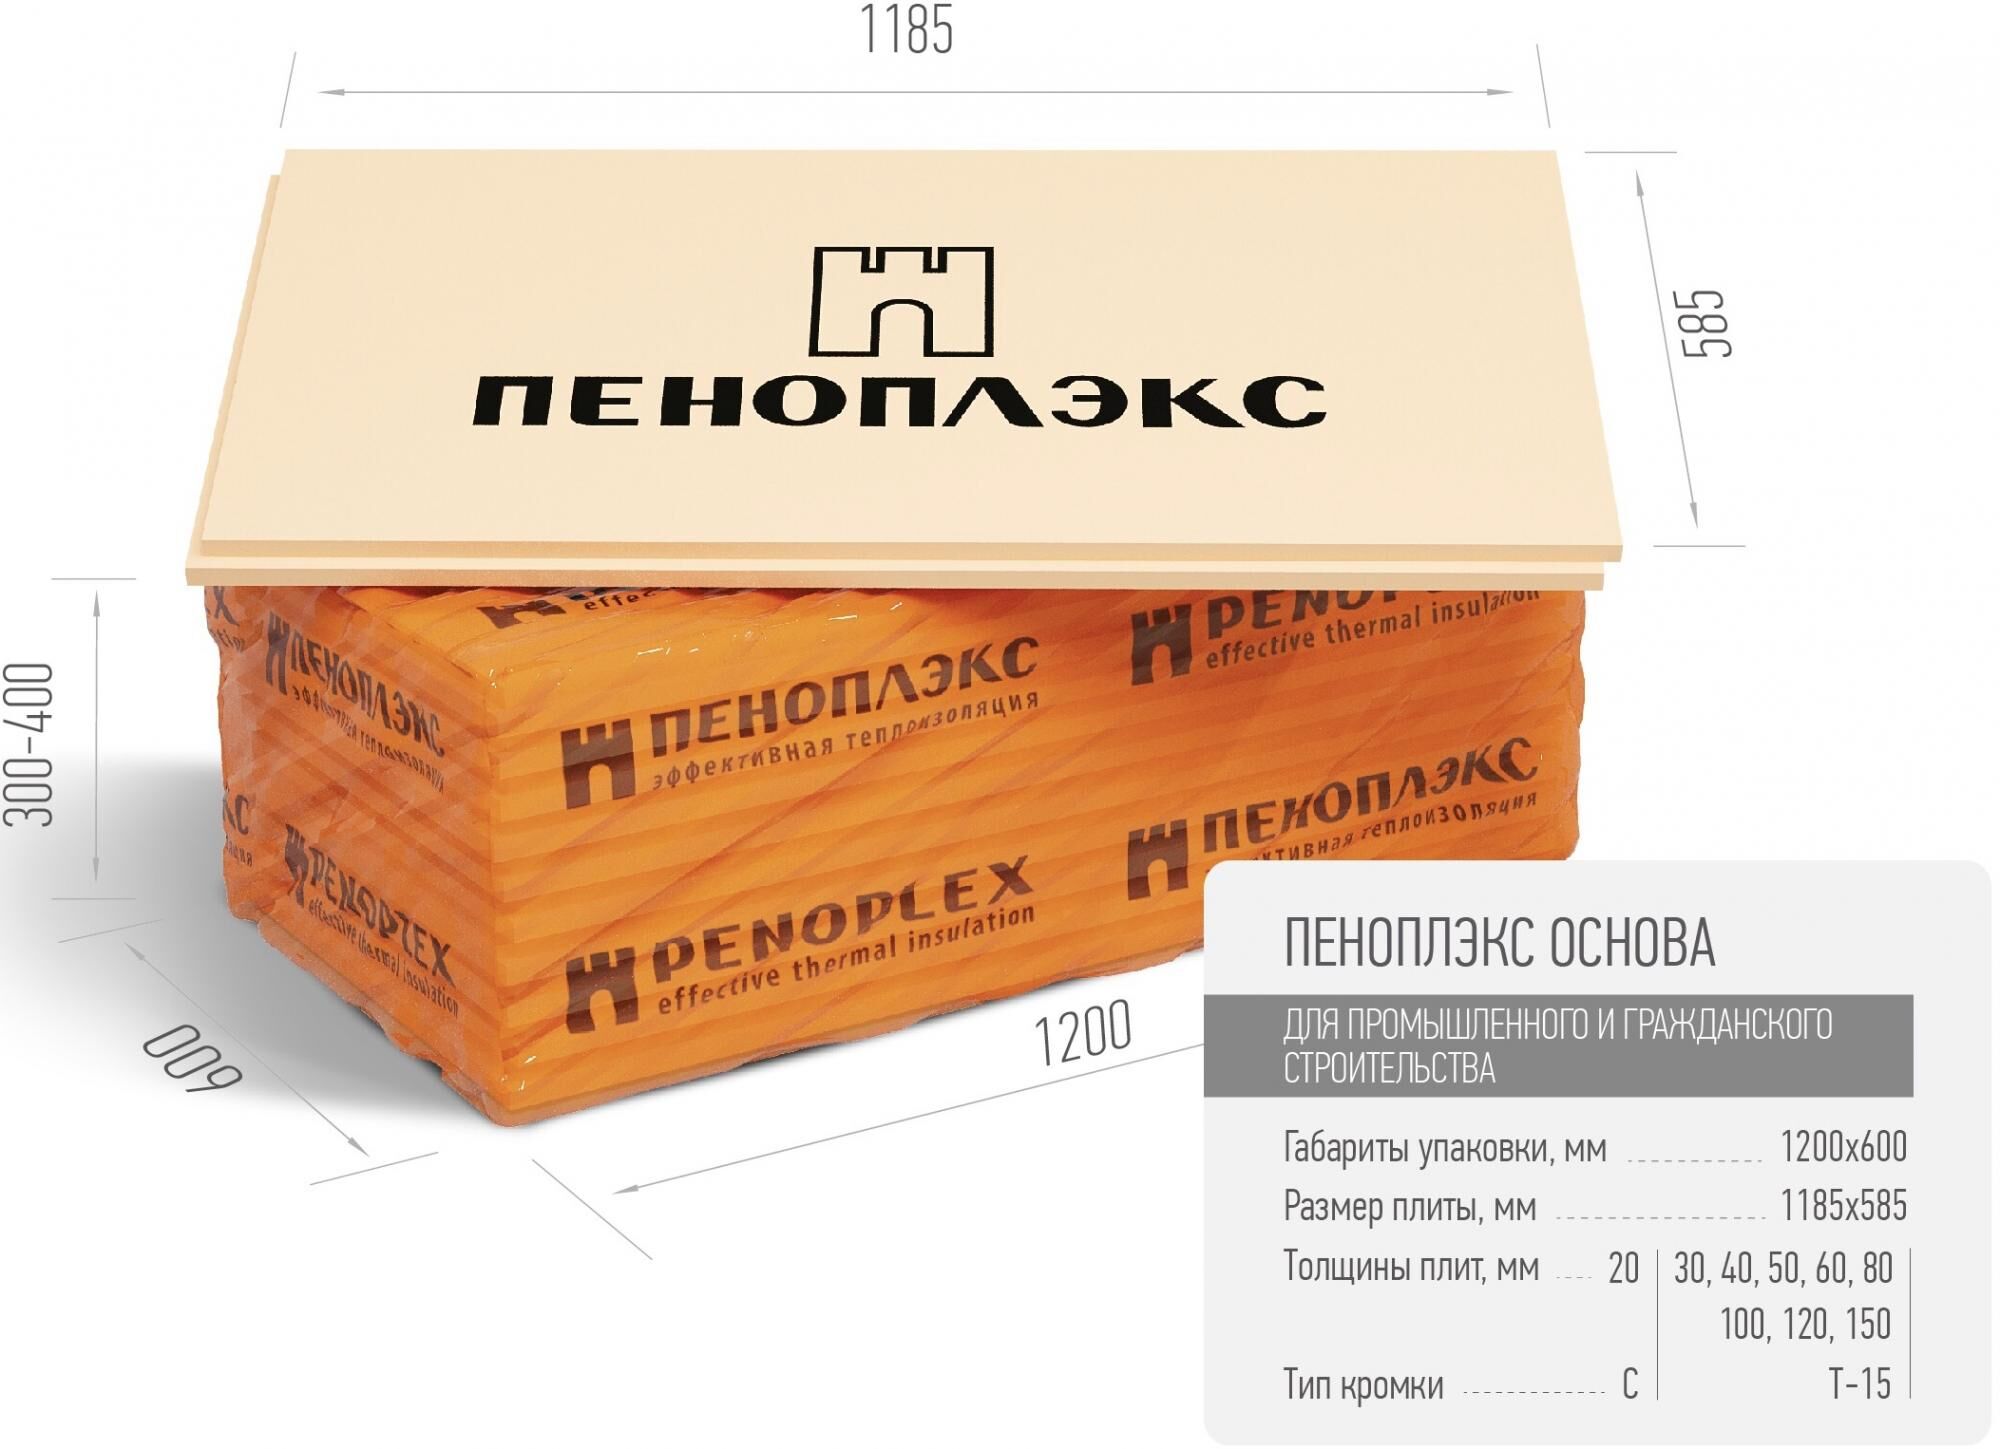 Экструзионный пенополистирол ПЕНОПЛЭКС ОСНОВА ® 40 мм Пеноплэкс